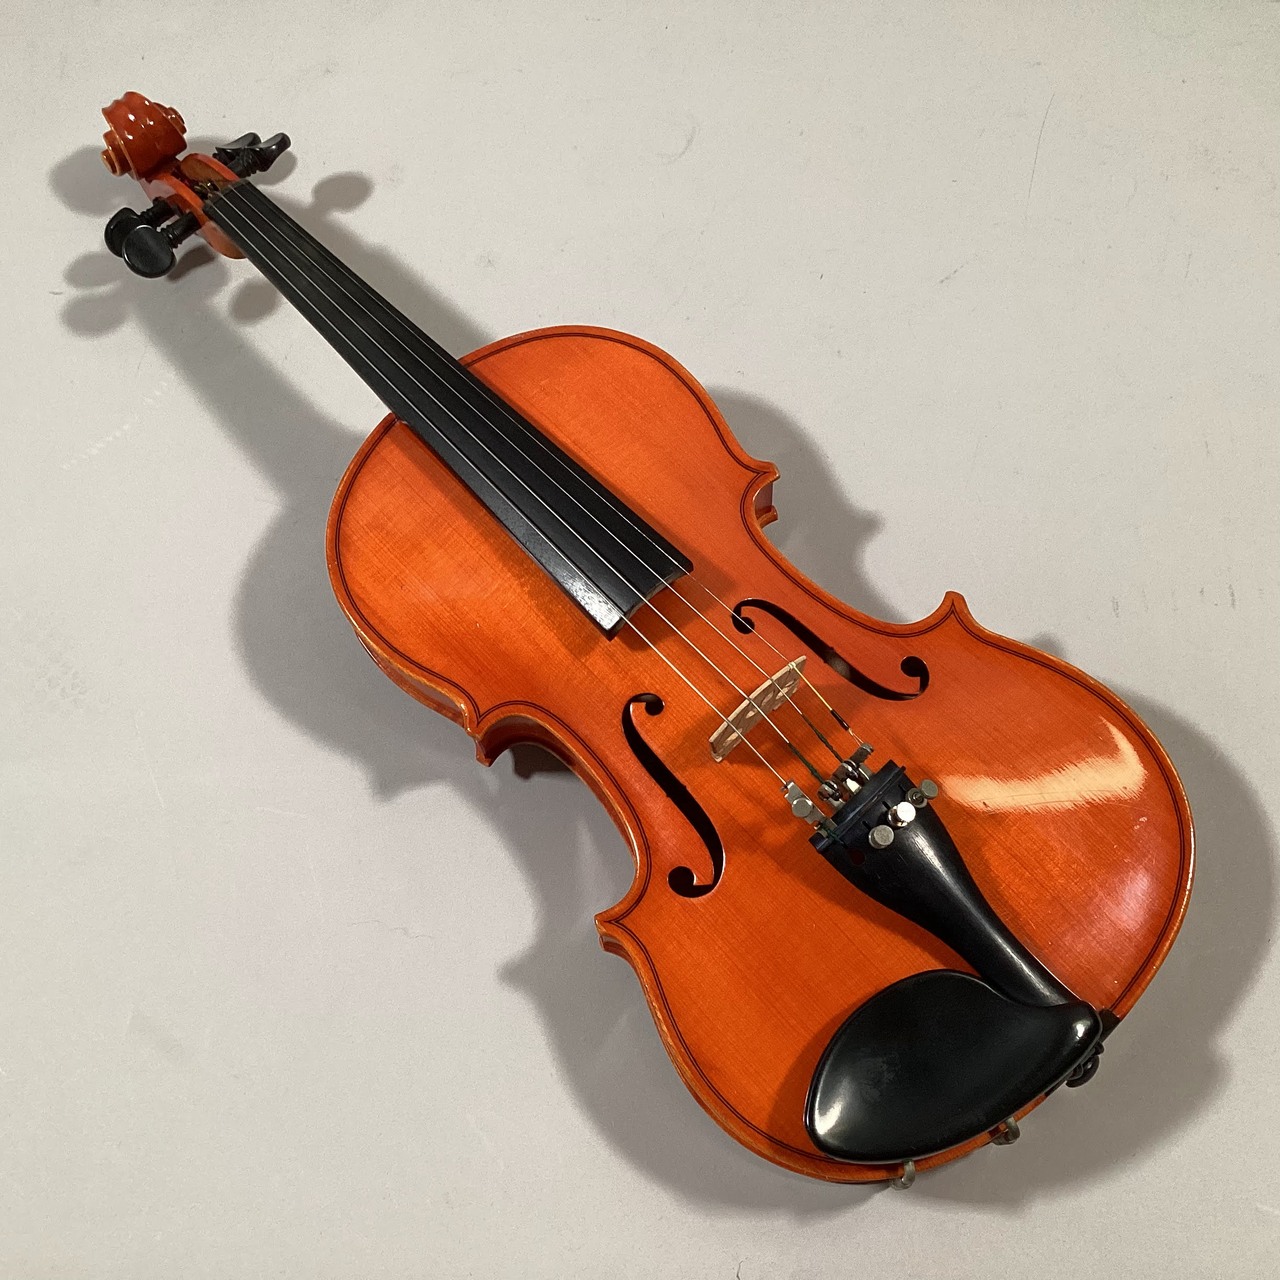 ピグマリウス バイオリン ST-03 4/4 1993年製承知致しました